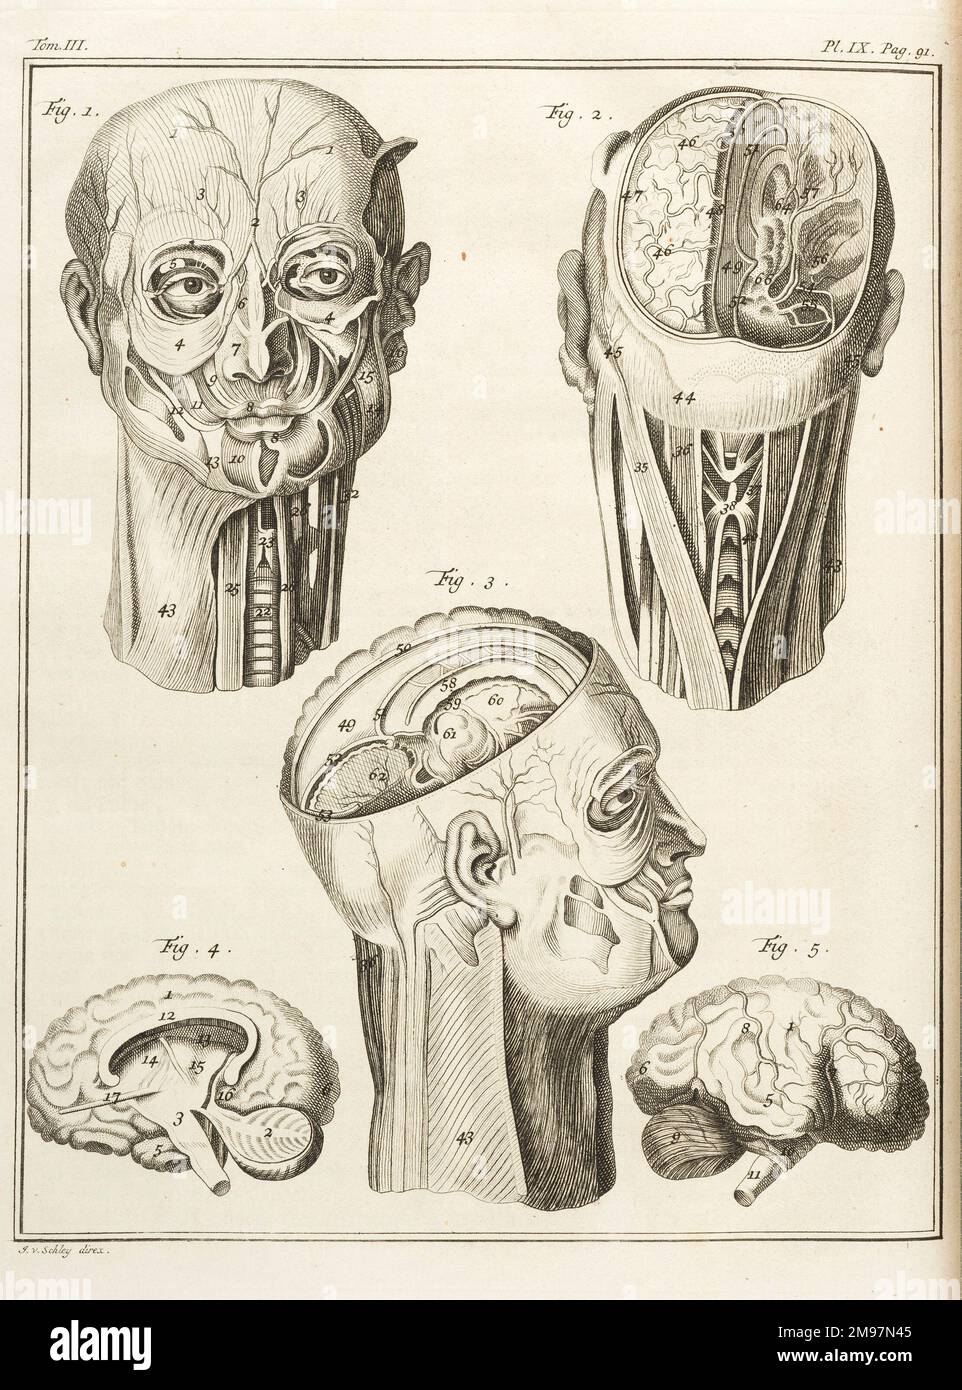 External and internal parts of the human head. Engraving by J. vander Schley, from Pierre de Hondt, Histoire Naturelle generale et particuliere avec la description du Cabinet du Roy. Pl. IX, Volume III. Stock Photo